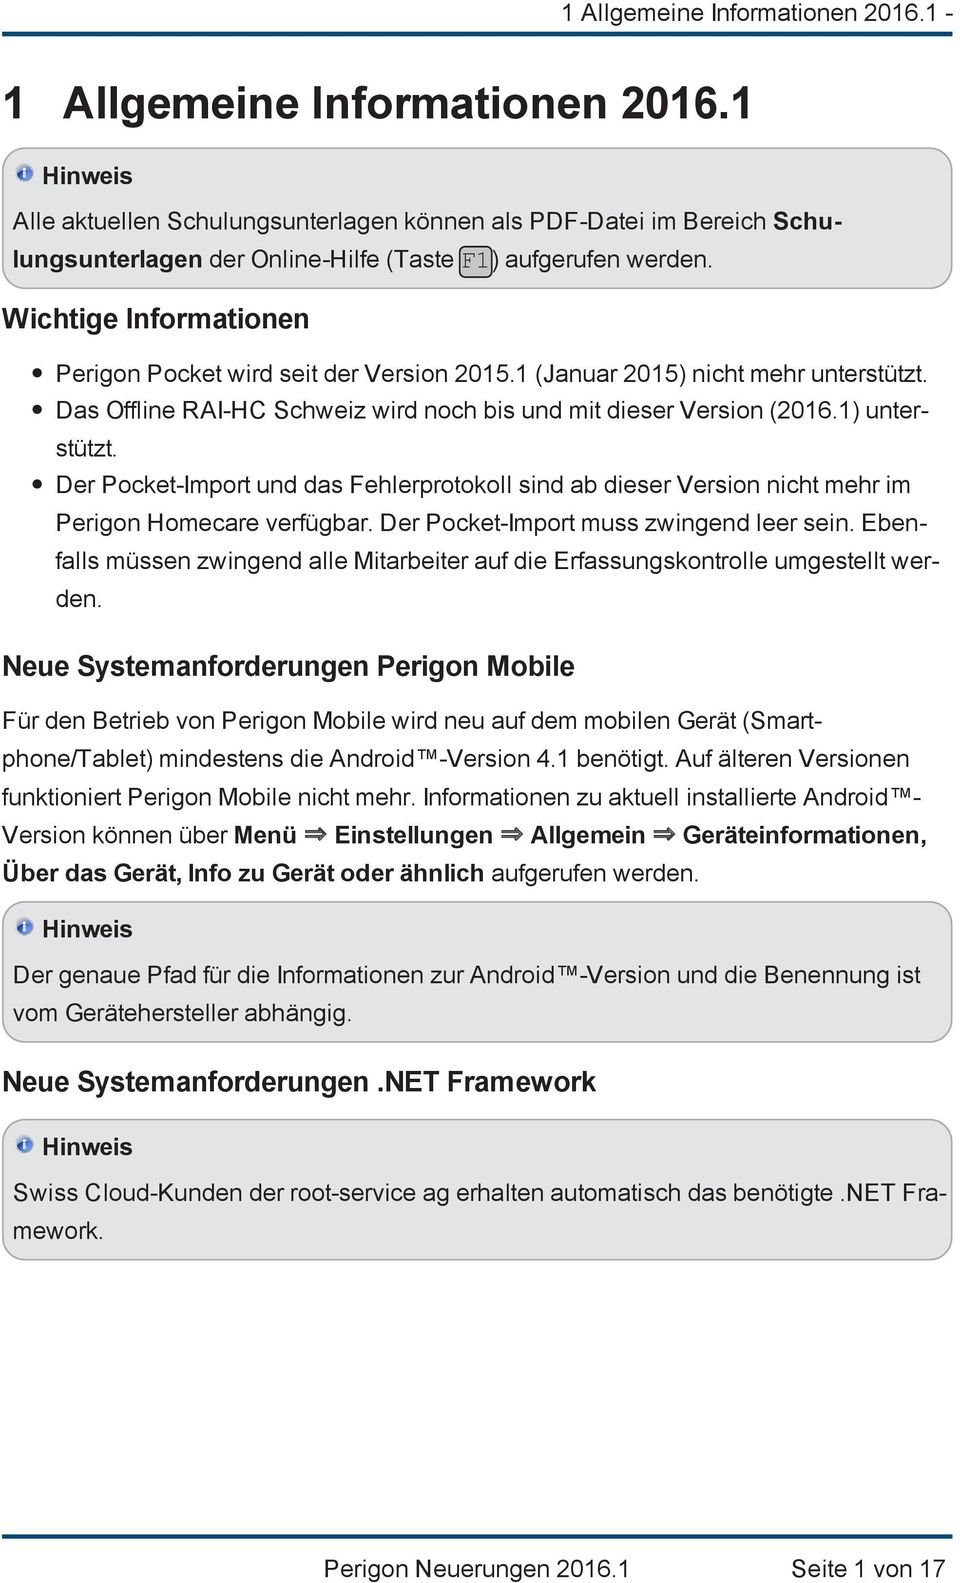 Wichtige Informationen Perigon Pocket wird seit der Version 2015.1 (Januar 2015) nicht mehr unterstützt. Das Offline RAI-HC Schweiz wird noch bis und mit dieser Version (2016.1) unterstützt.